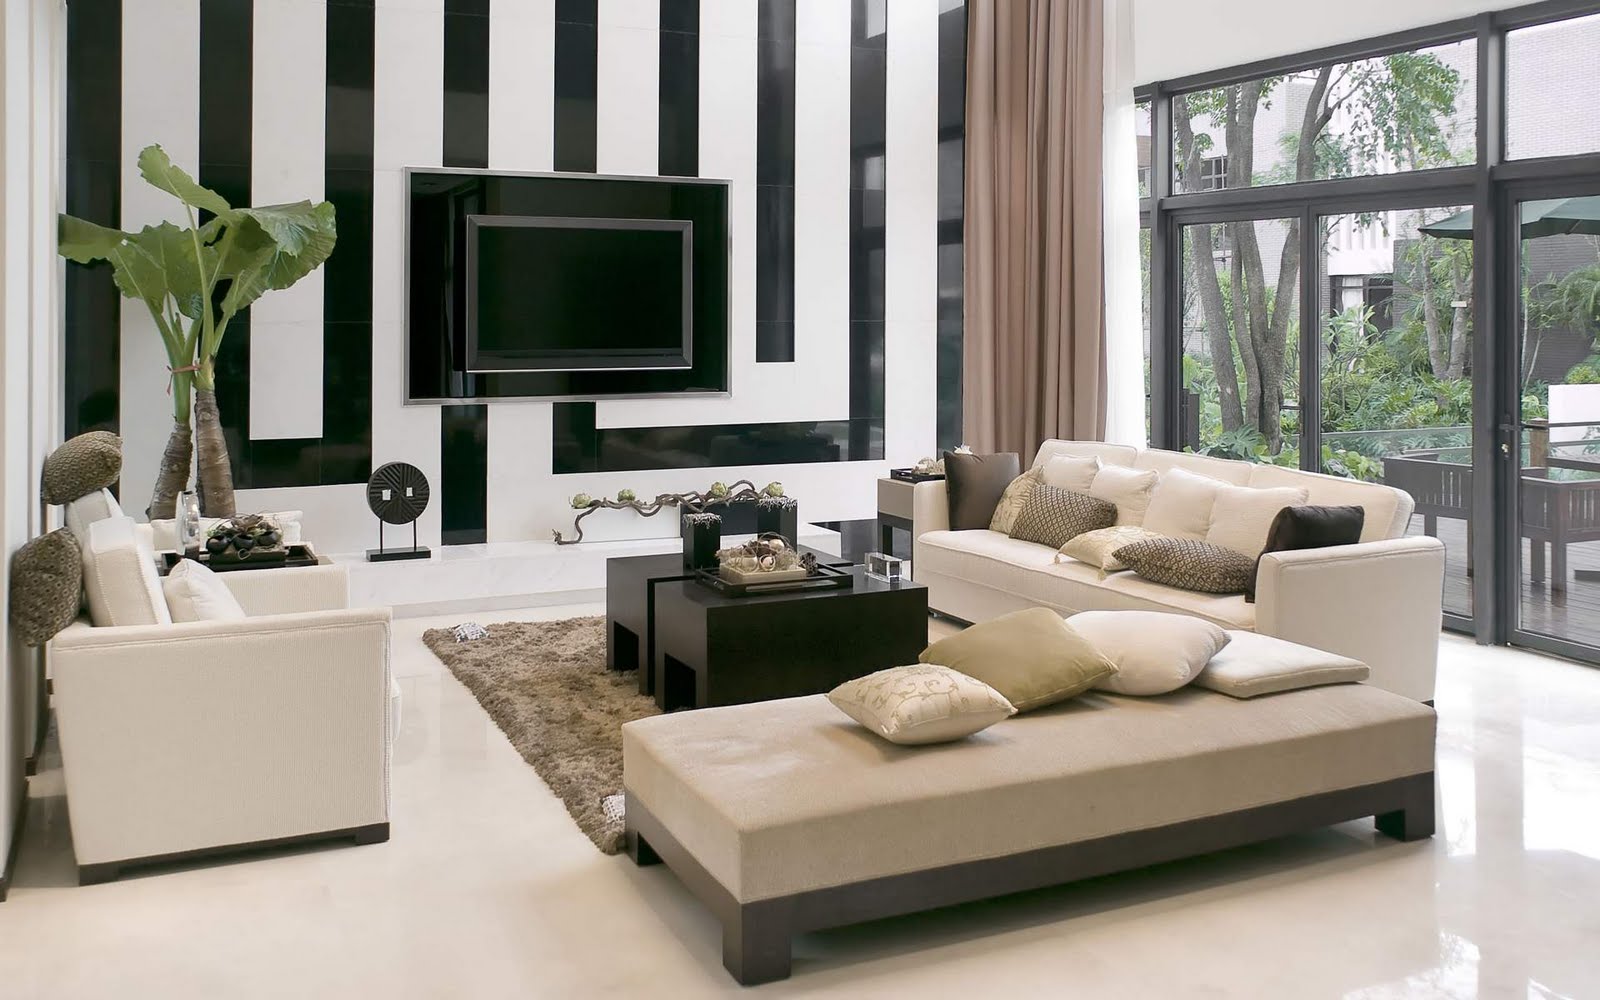 http://2.bp.blogspot.com/-AWQ-TOdeXH0/TkbsXCWF0yI/AAAAAAAAGGc/vvb_rz_kZHI/s1600/Modern-Trendy-Living-Room-Home-Design-Interior-Ideas-with-Pics17.jpg